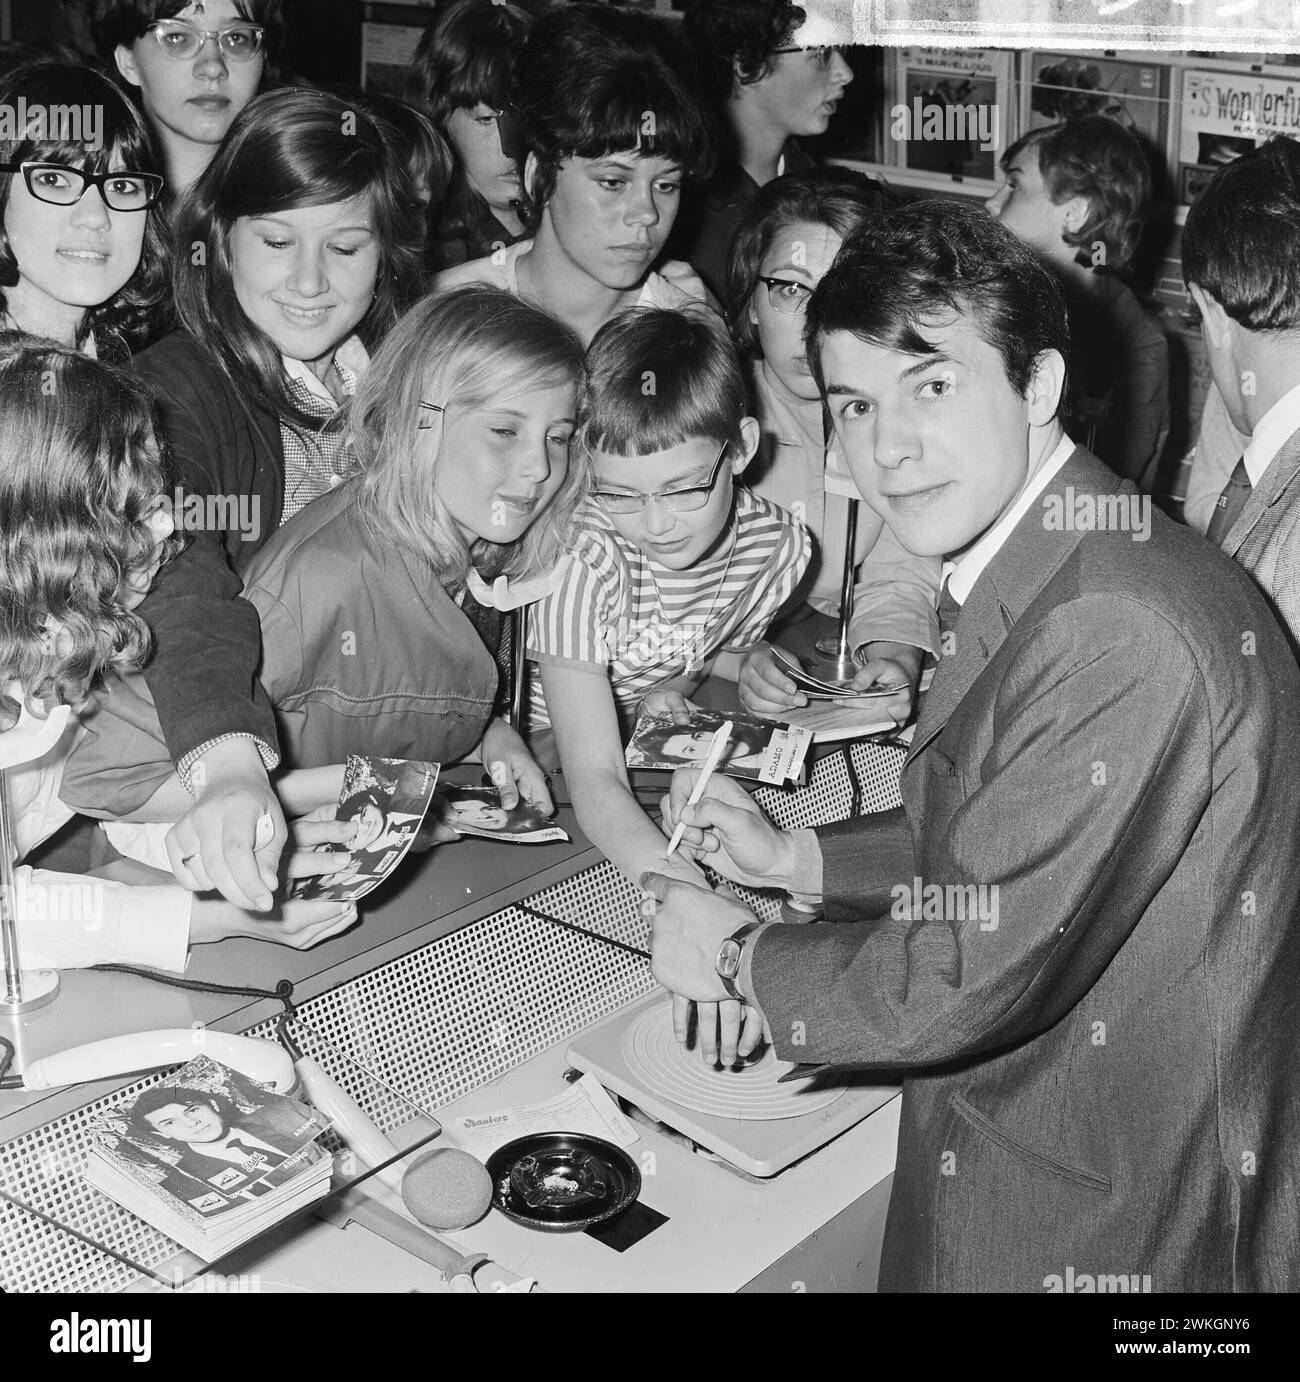 20 maggio 1964. Rotterdam, Paesi Bassi. - Il cantante belga di origine italiana, Adamo, Salvatore Adamo, tra i suoi fan, in una sessione di autografi Foto Stock